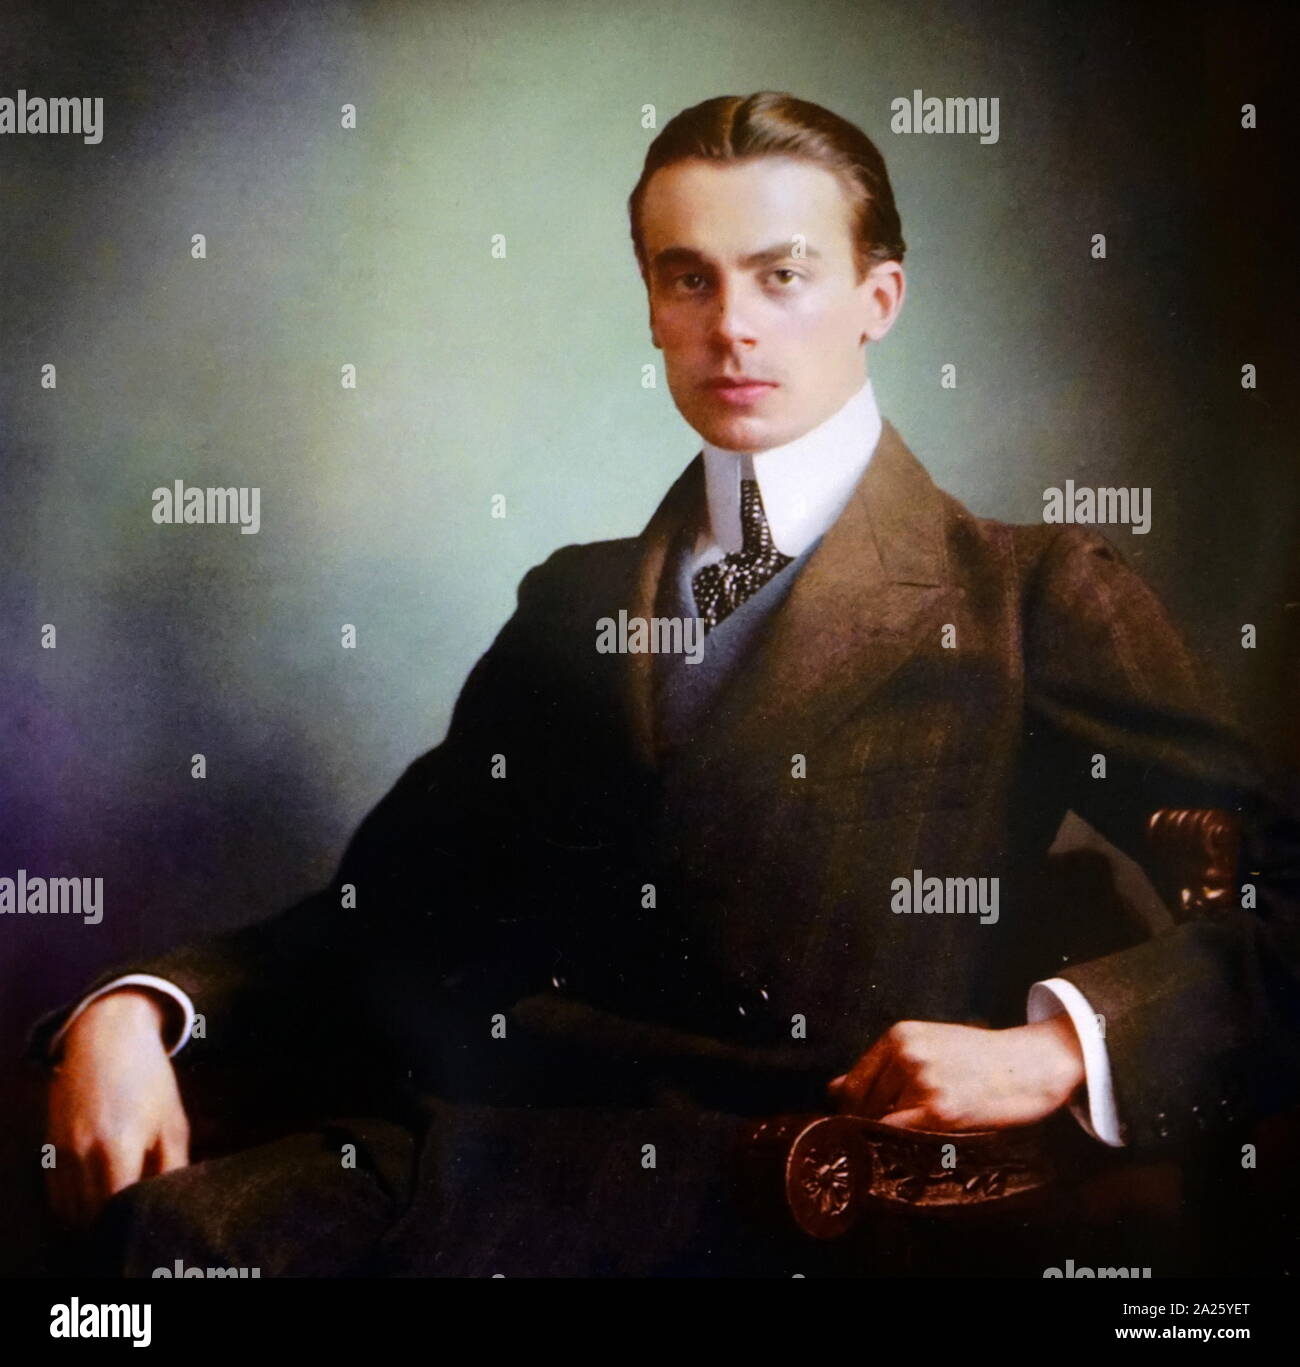 Fotografia a colori di Felix Yusupov. Il principe Felix Yusupov Felixovich, Conteggio Sumarokov-Elston (1887-1967) un aristocratico Russo, il principe e il conteggio dalla famiglia Yusupov. È il più noto per la sua partecipazione all'assassinio di Grigori Rasputin. Foto Stock